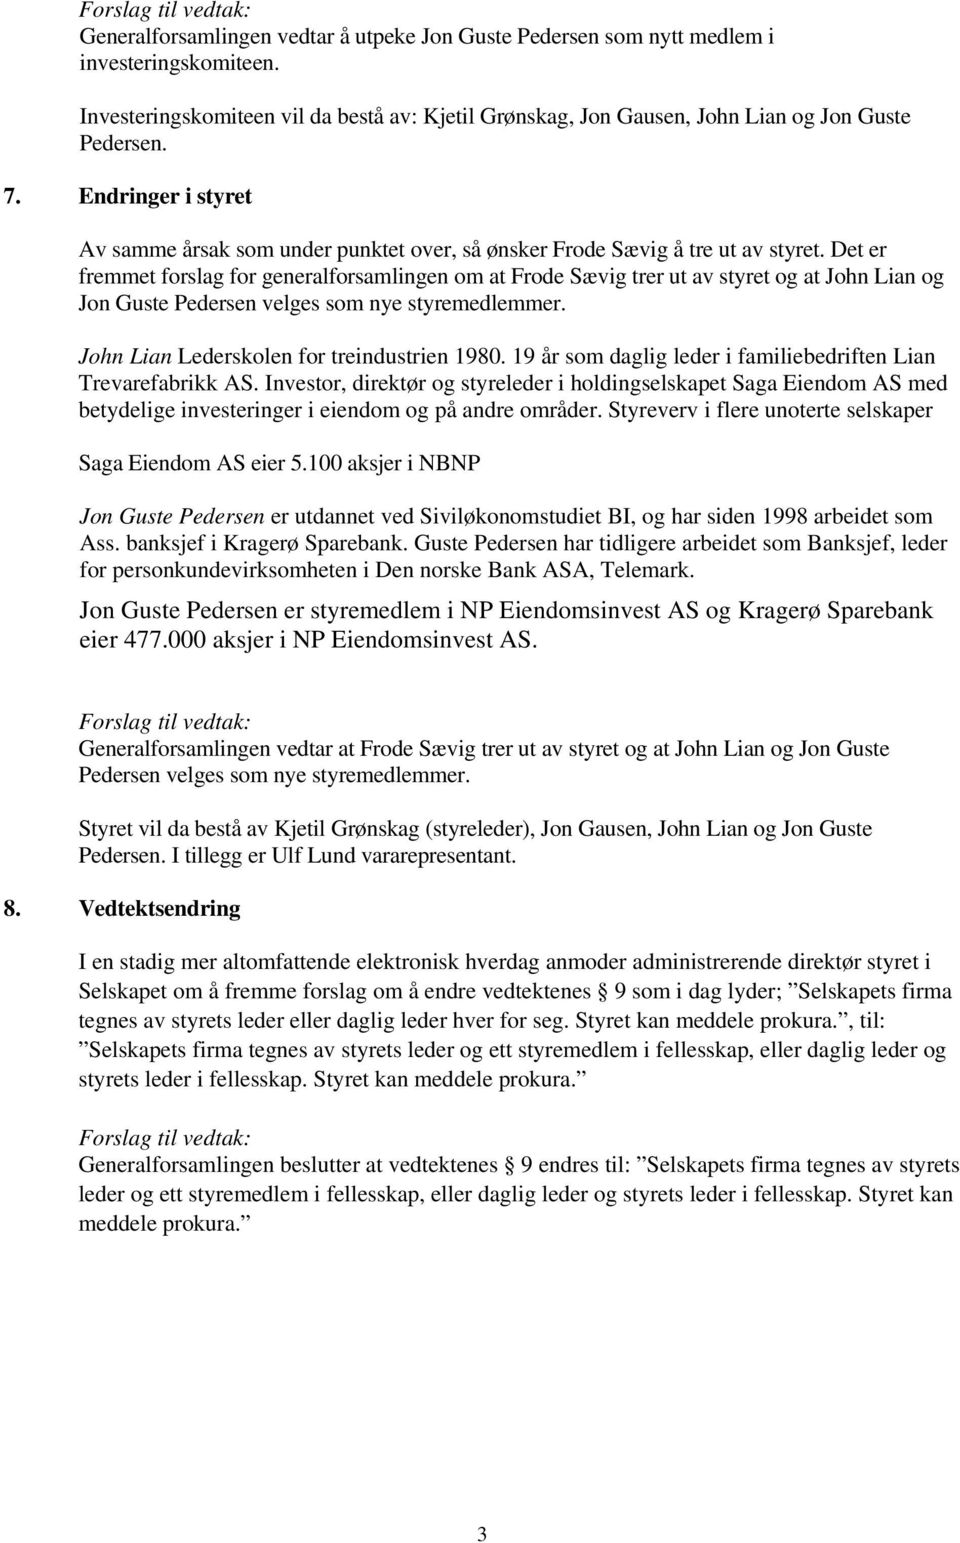 Det er fremmet forslag for generalforsamlingen om at Frode Sævig trer ut av styret og at John Lian og Jon Guste Pedersen velges som nye styremedlemmer. John Lian Lederskolen for treindustrien 1980.